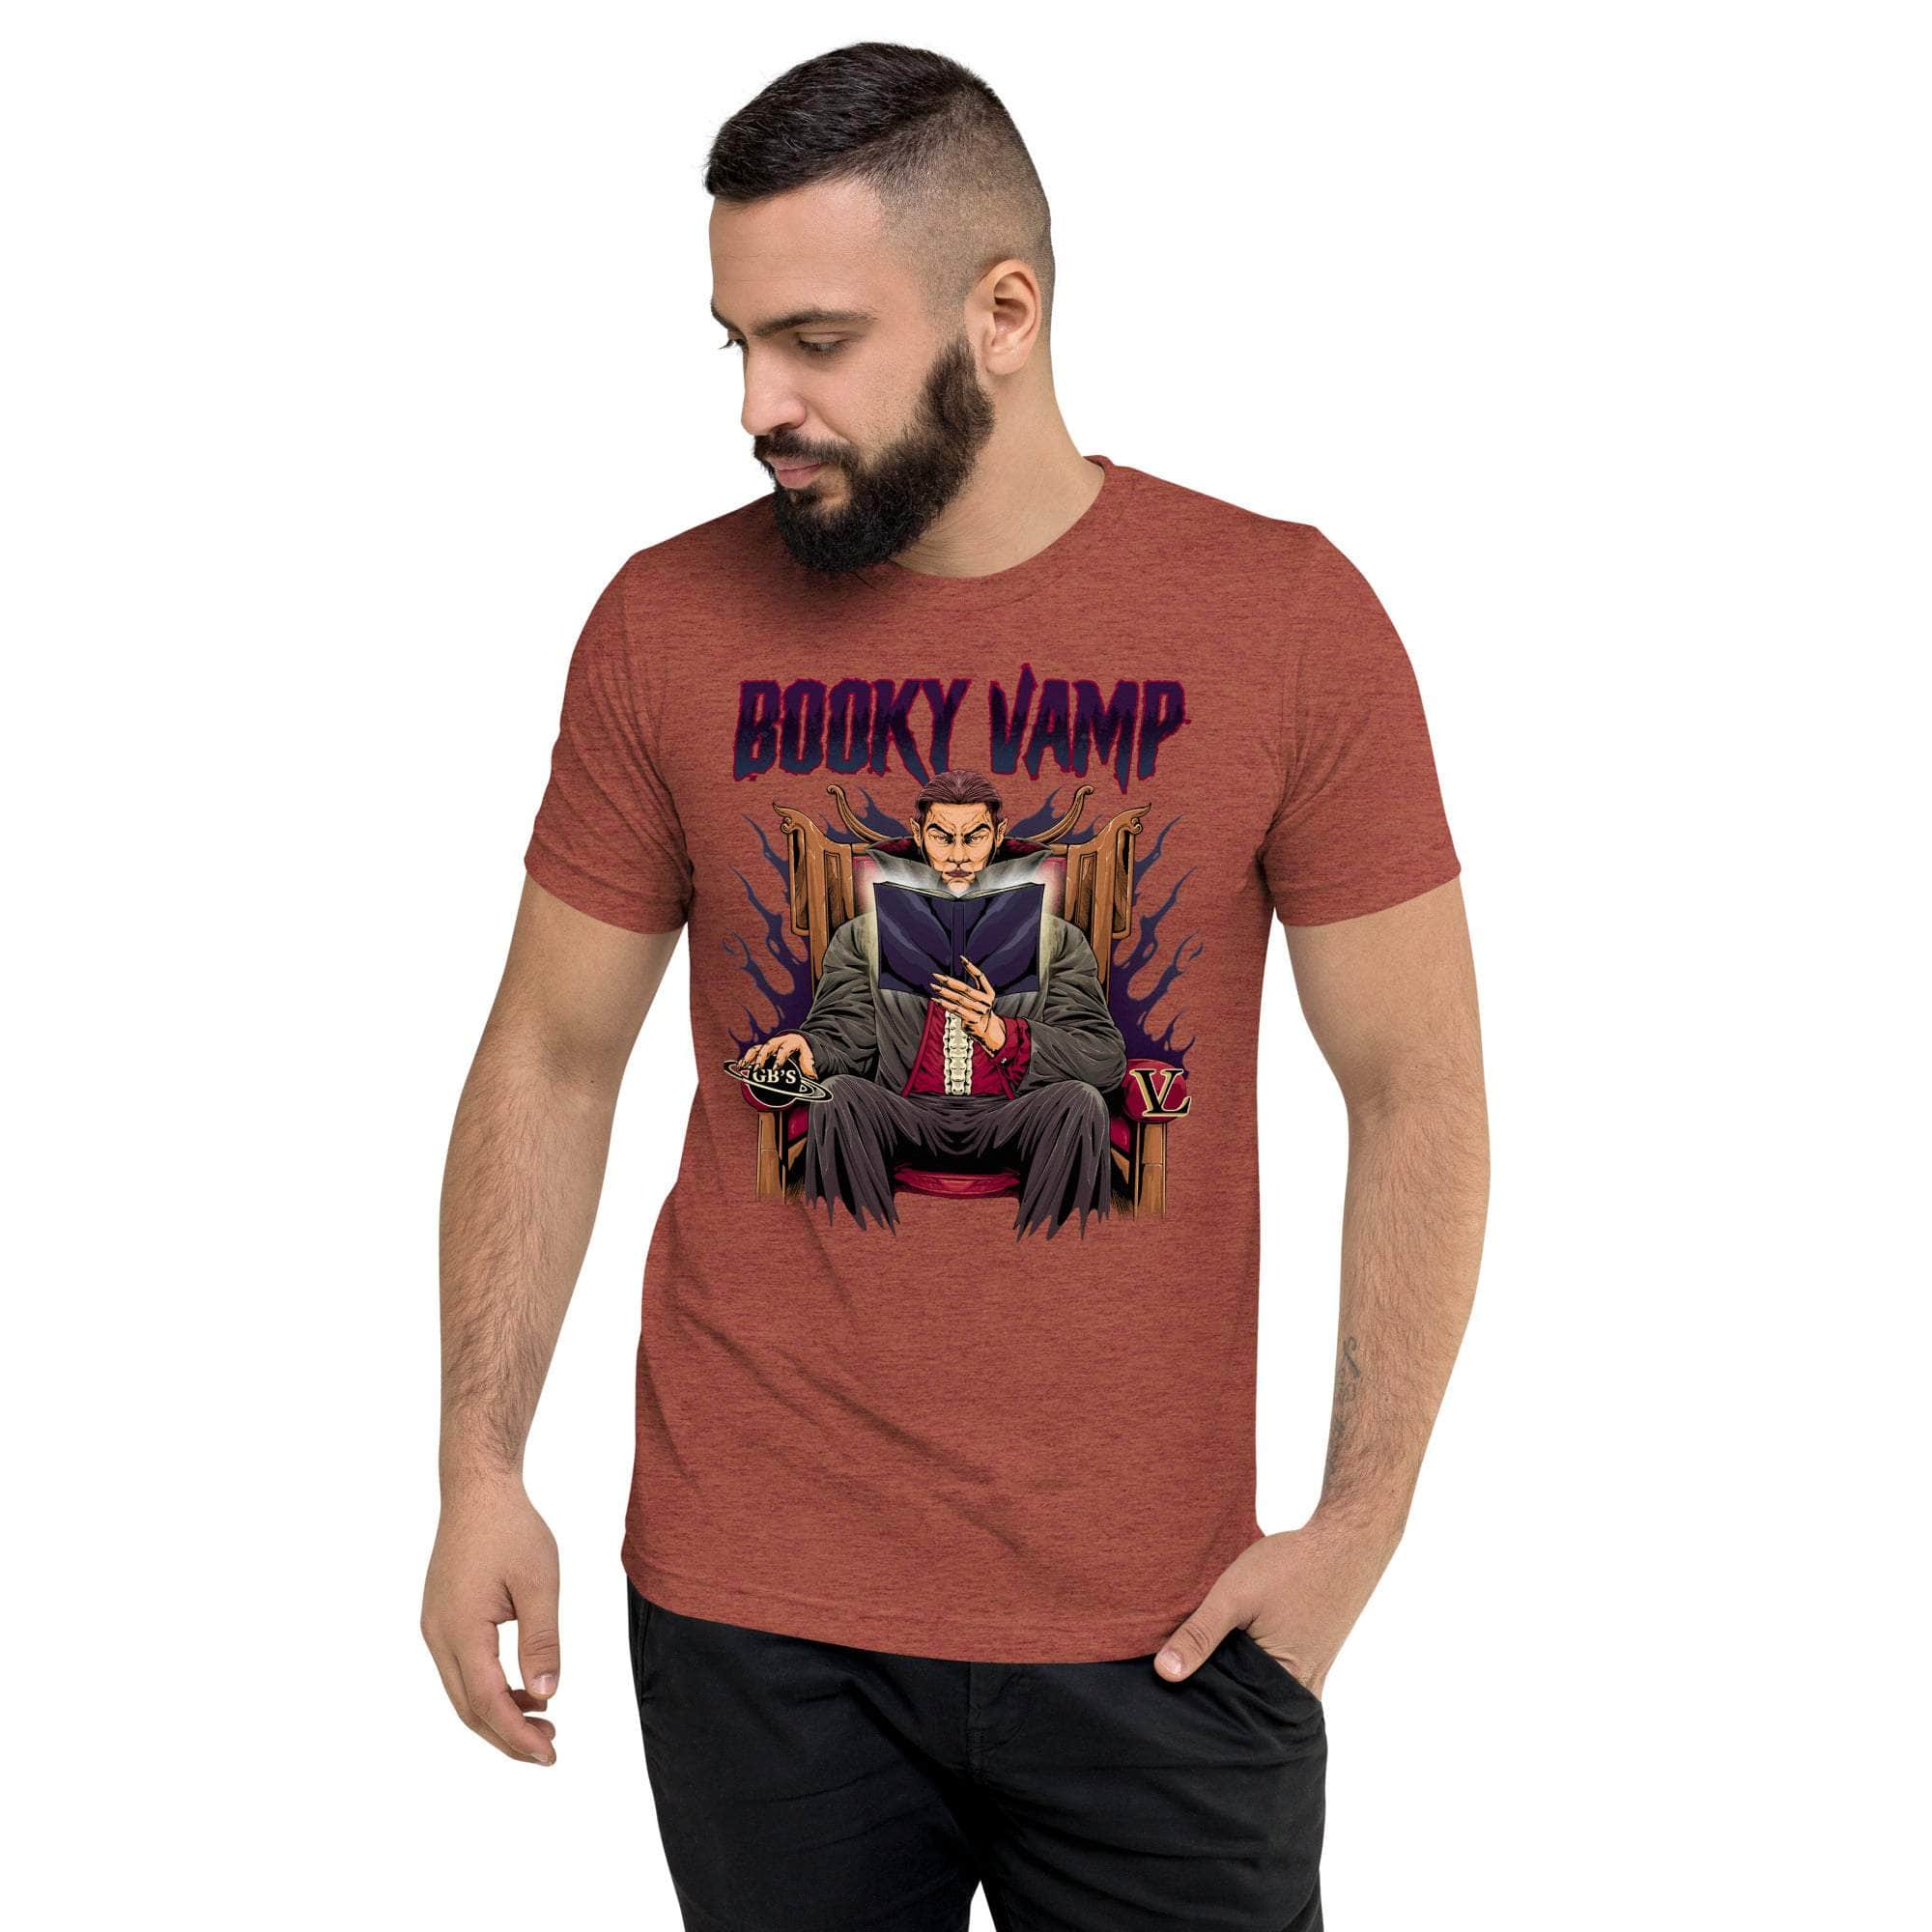 GBNY Clay Triblend / XS Vamp Life X GBNY "Booky Vamp" T-shirt - Men's 2381652_6512